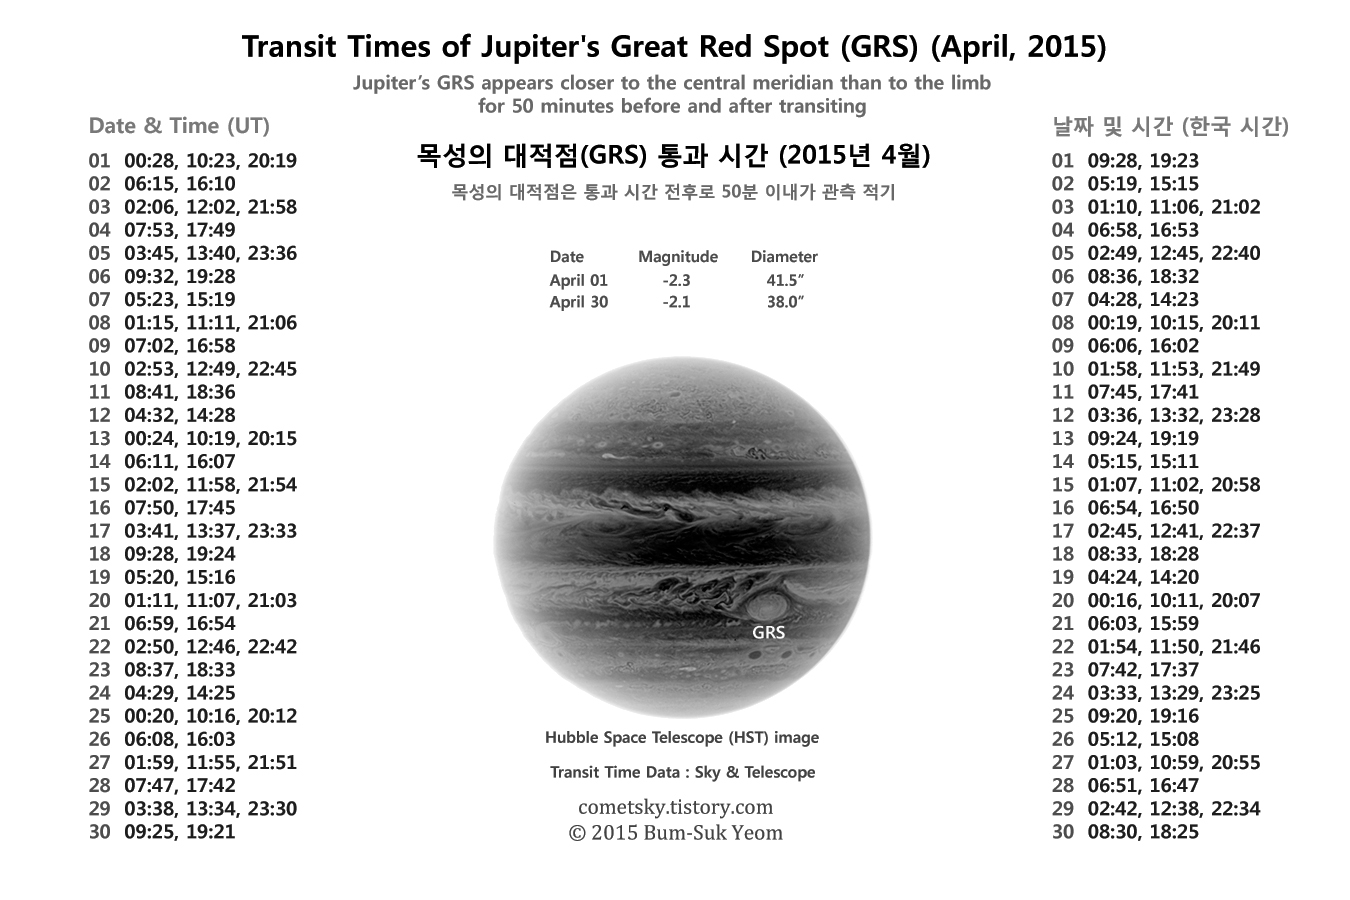 transit_times_of_jupiter_grs_april_2015_webprint_bsyeom.jpg